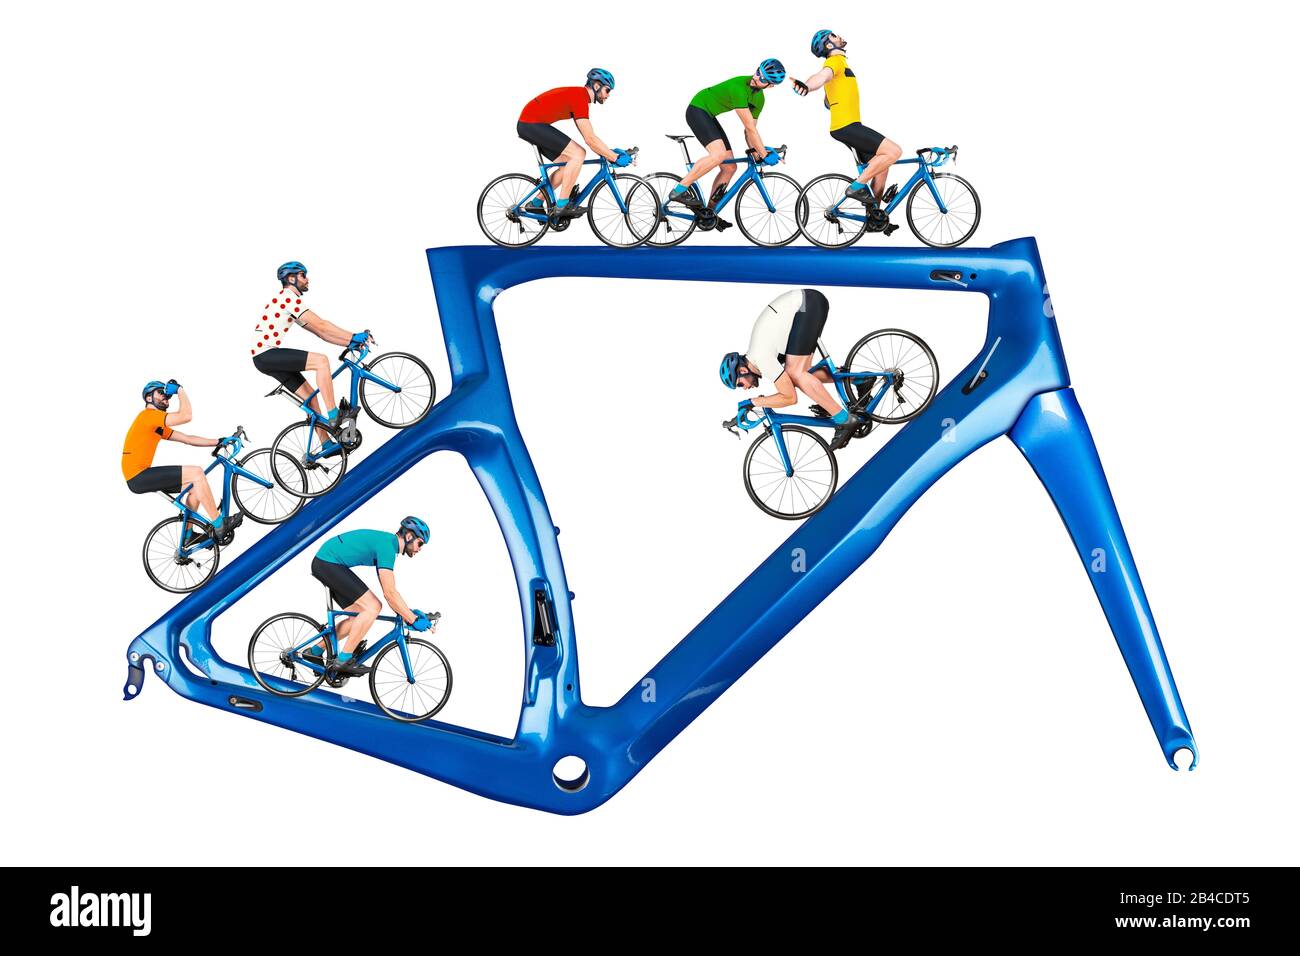 Radfahrer-Rennfahrerkonzept: Radfahrer im Wettkampftrikot auf Rennradfahren auf einem modernen blauen Carbonrahmen isoliert auf weißem Hintergrund Stockfoto